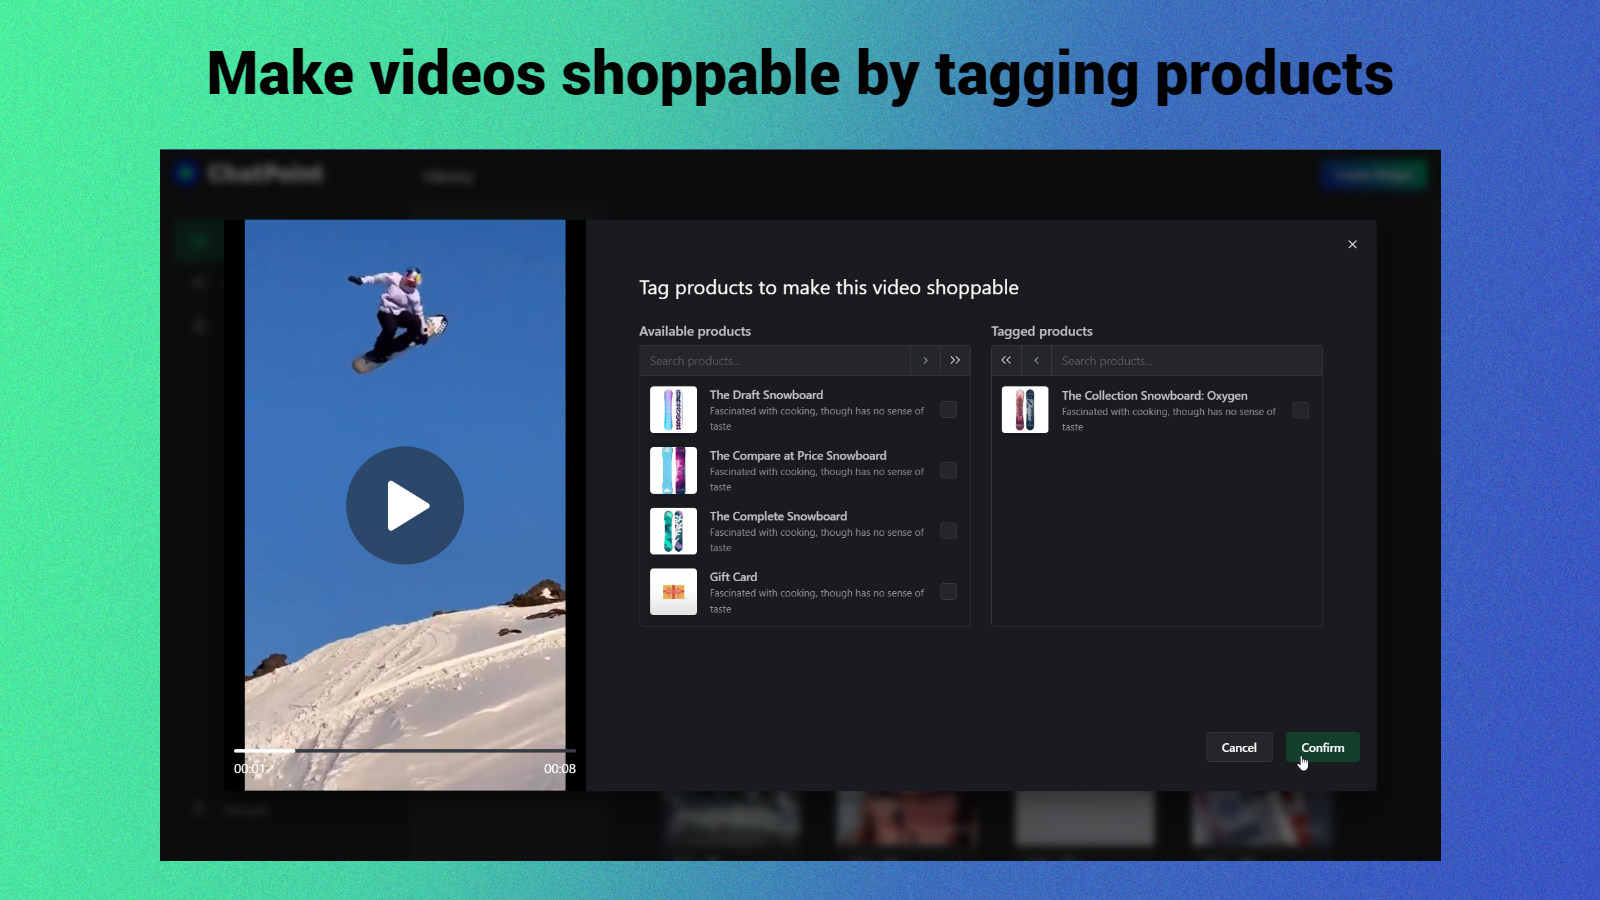 Etiqueta videos con productos para hacerlos comprables